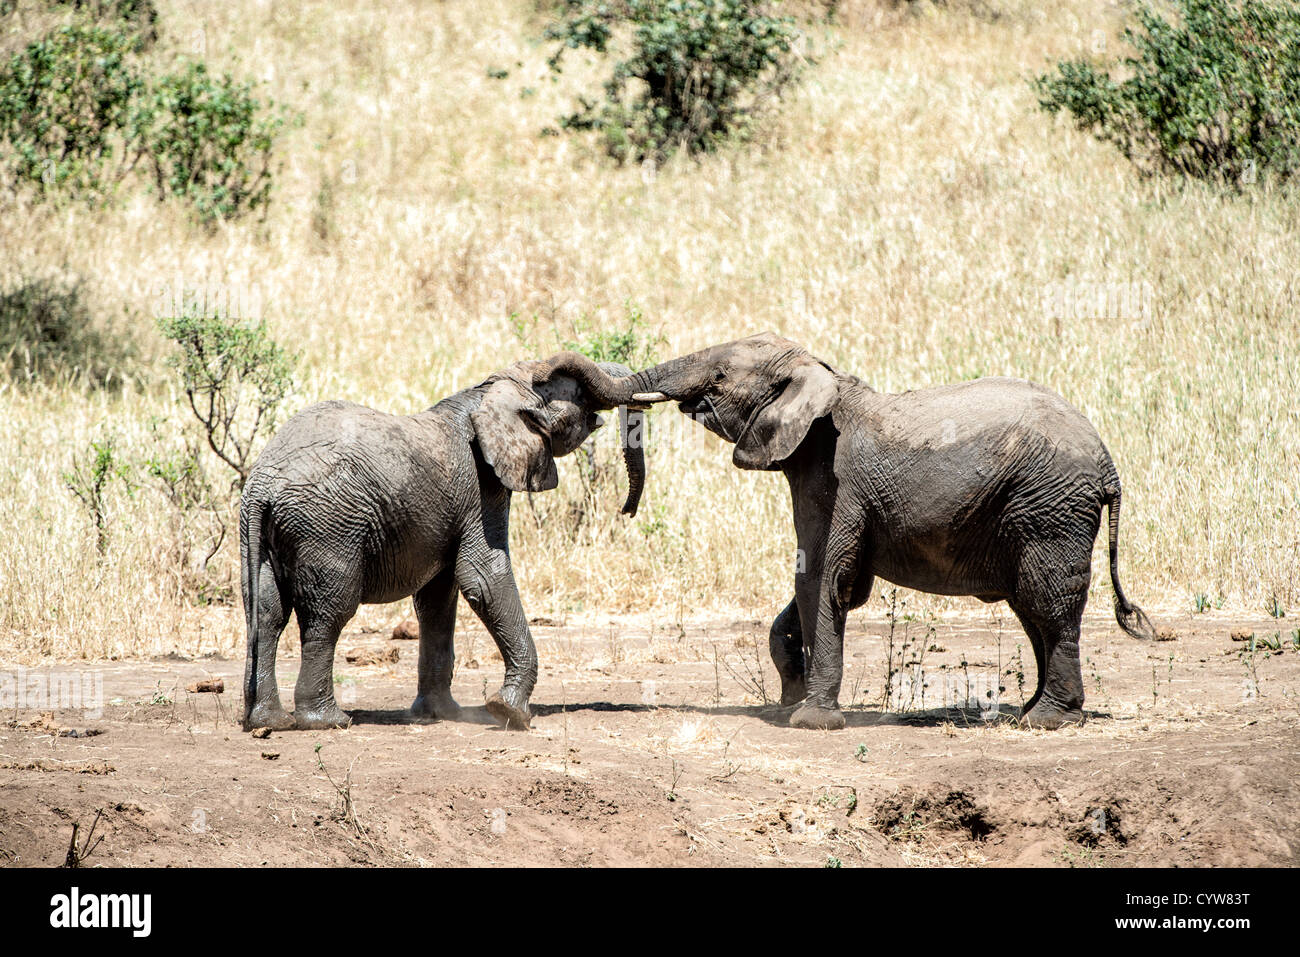 Der Tarangire National Park, Tansania - Zwei junge Elefanten bei Spielen in der Tarangire National Park im Norden von Tansania, nicht weit von den Ngorongoro Krater und die Serengeti. Stockfoto